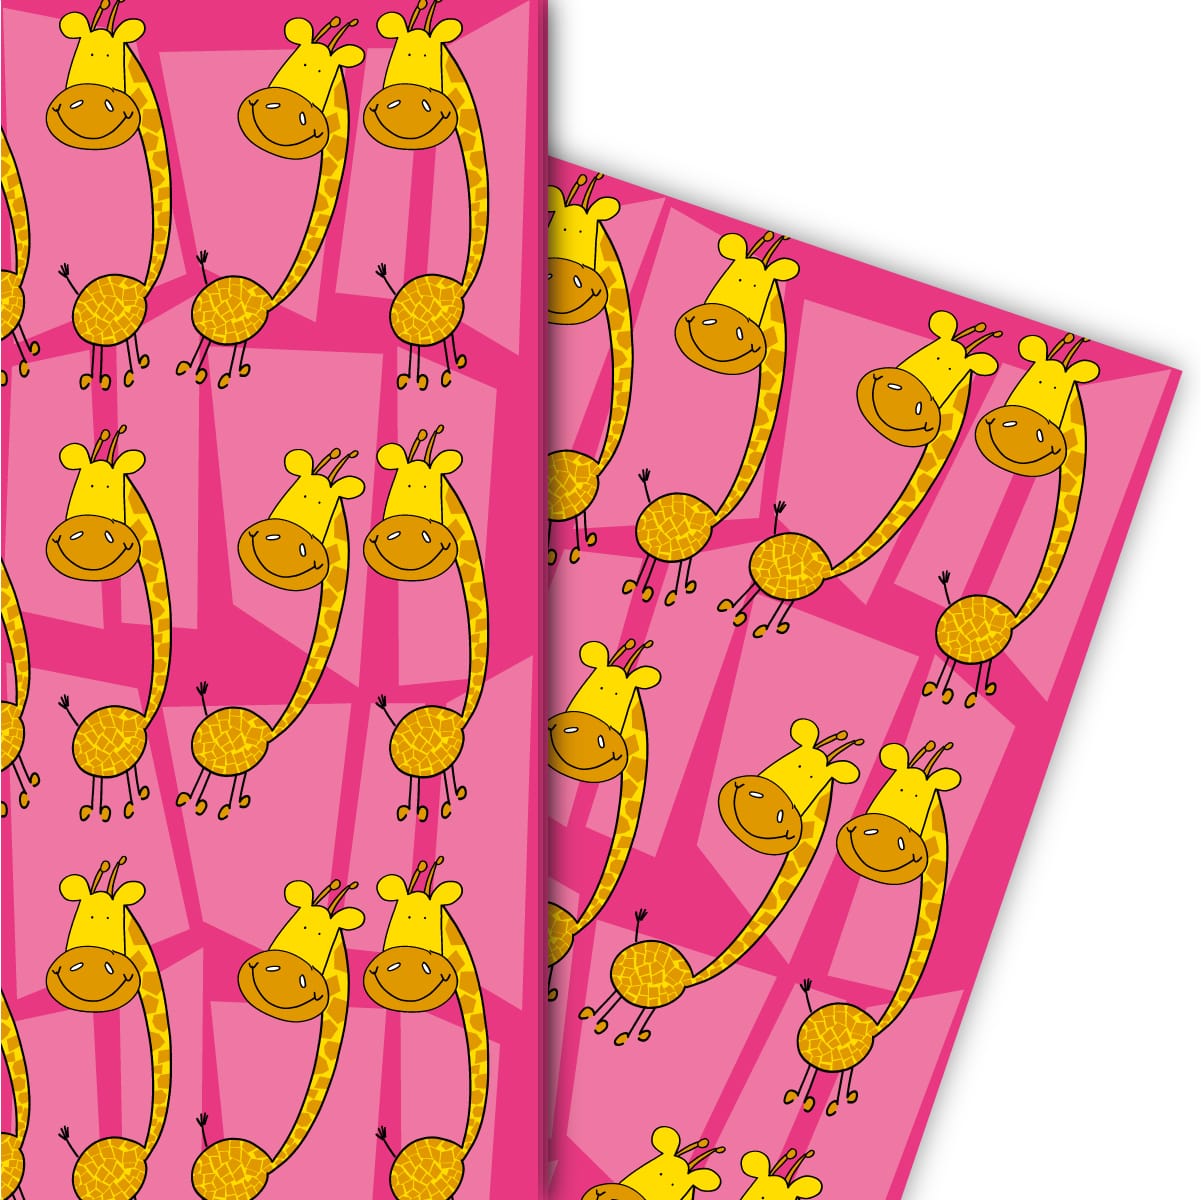 Kartenkaufrausch: Lustiges Geschenkpapier mit Giraffen aus unserer Kinder Papeterie in pink